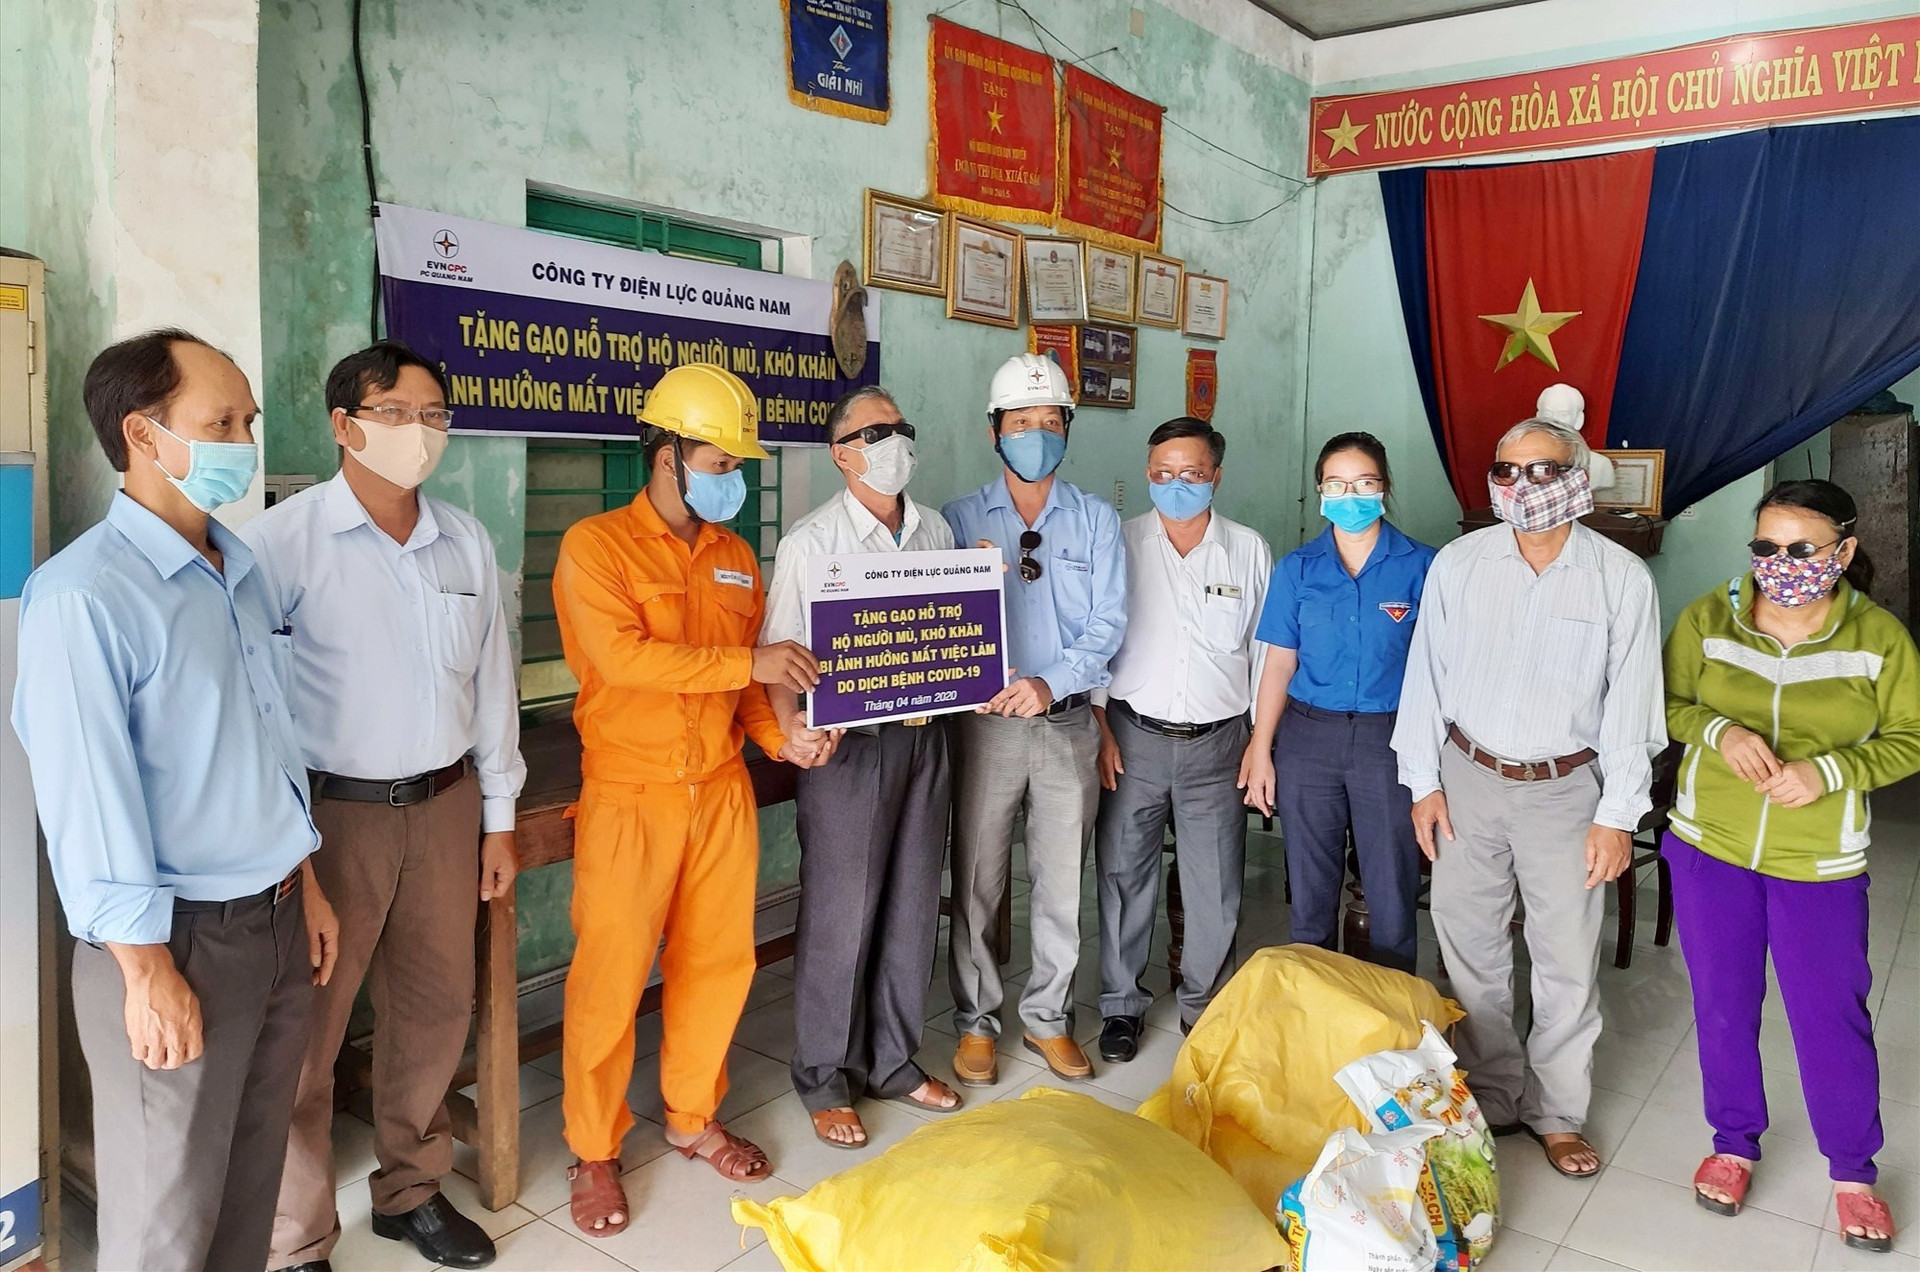 Công ty Điện lực Quảng Nam (PC Quảng Nam) phối hợp Hội Người mù tỉnh đến hỗ trợ gạo cho 138 hội viên người mù trên toàn tỉnh (mỗi suất 20kg gạo).